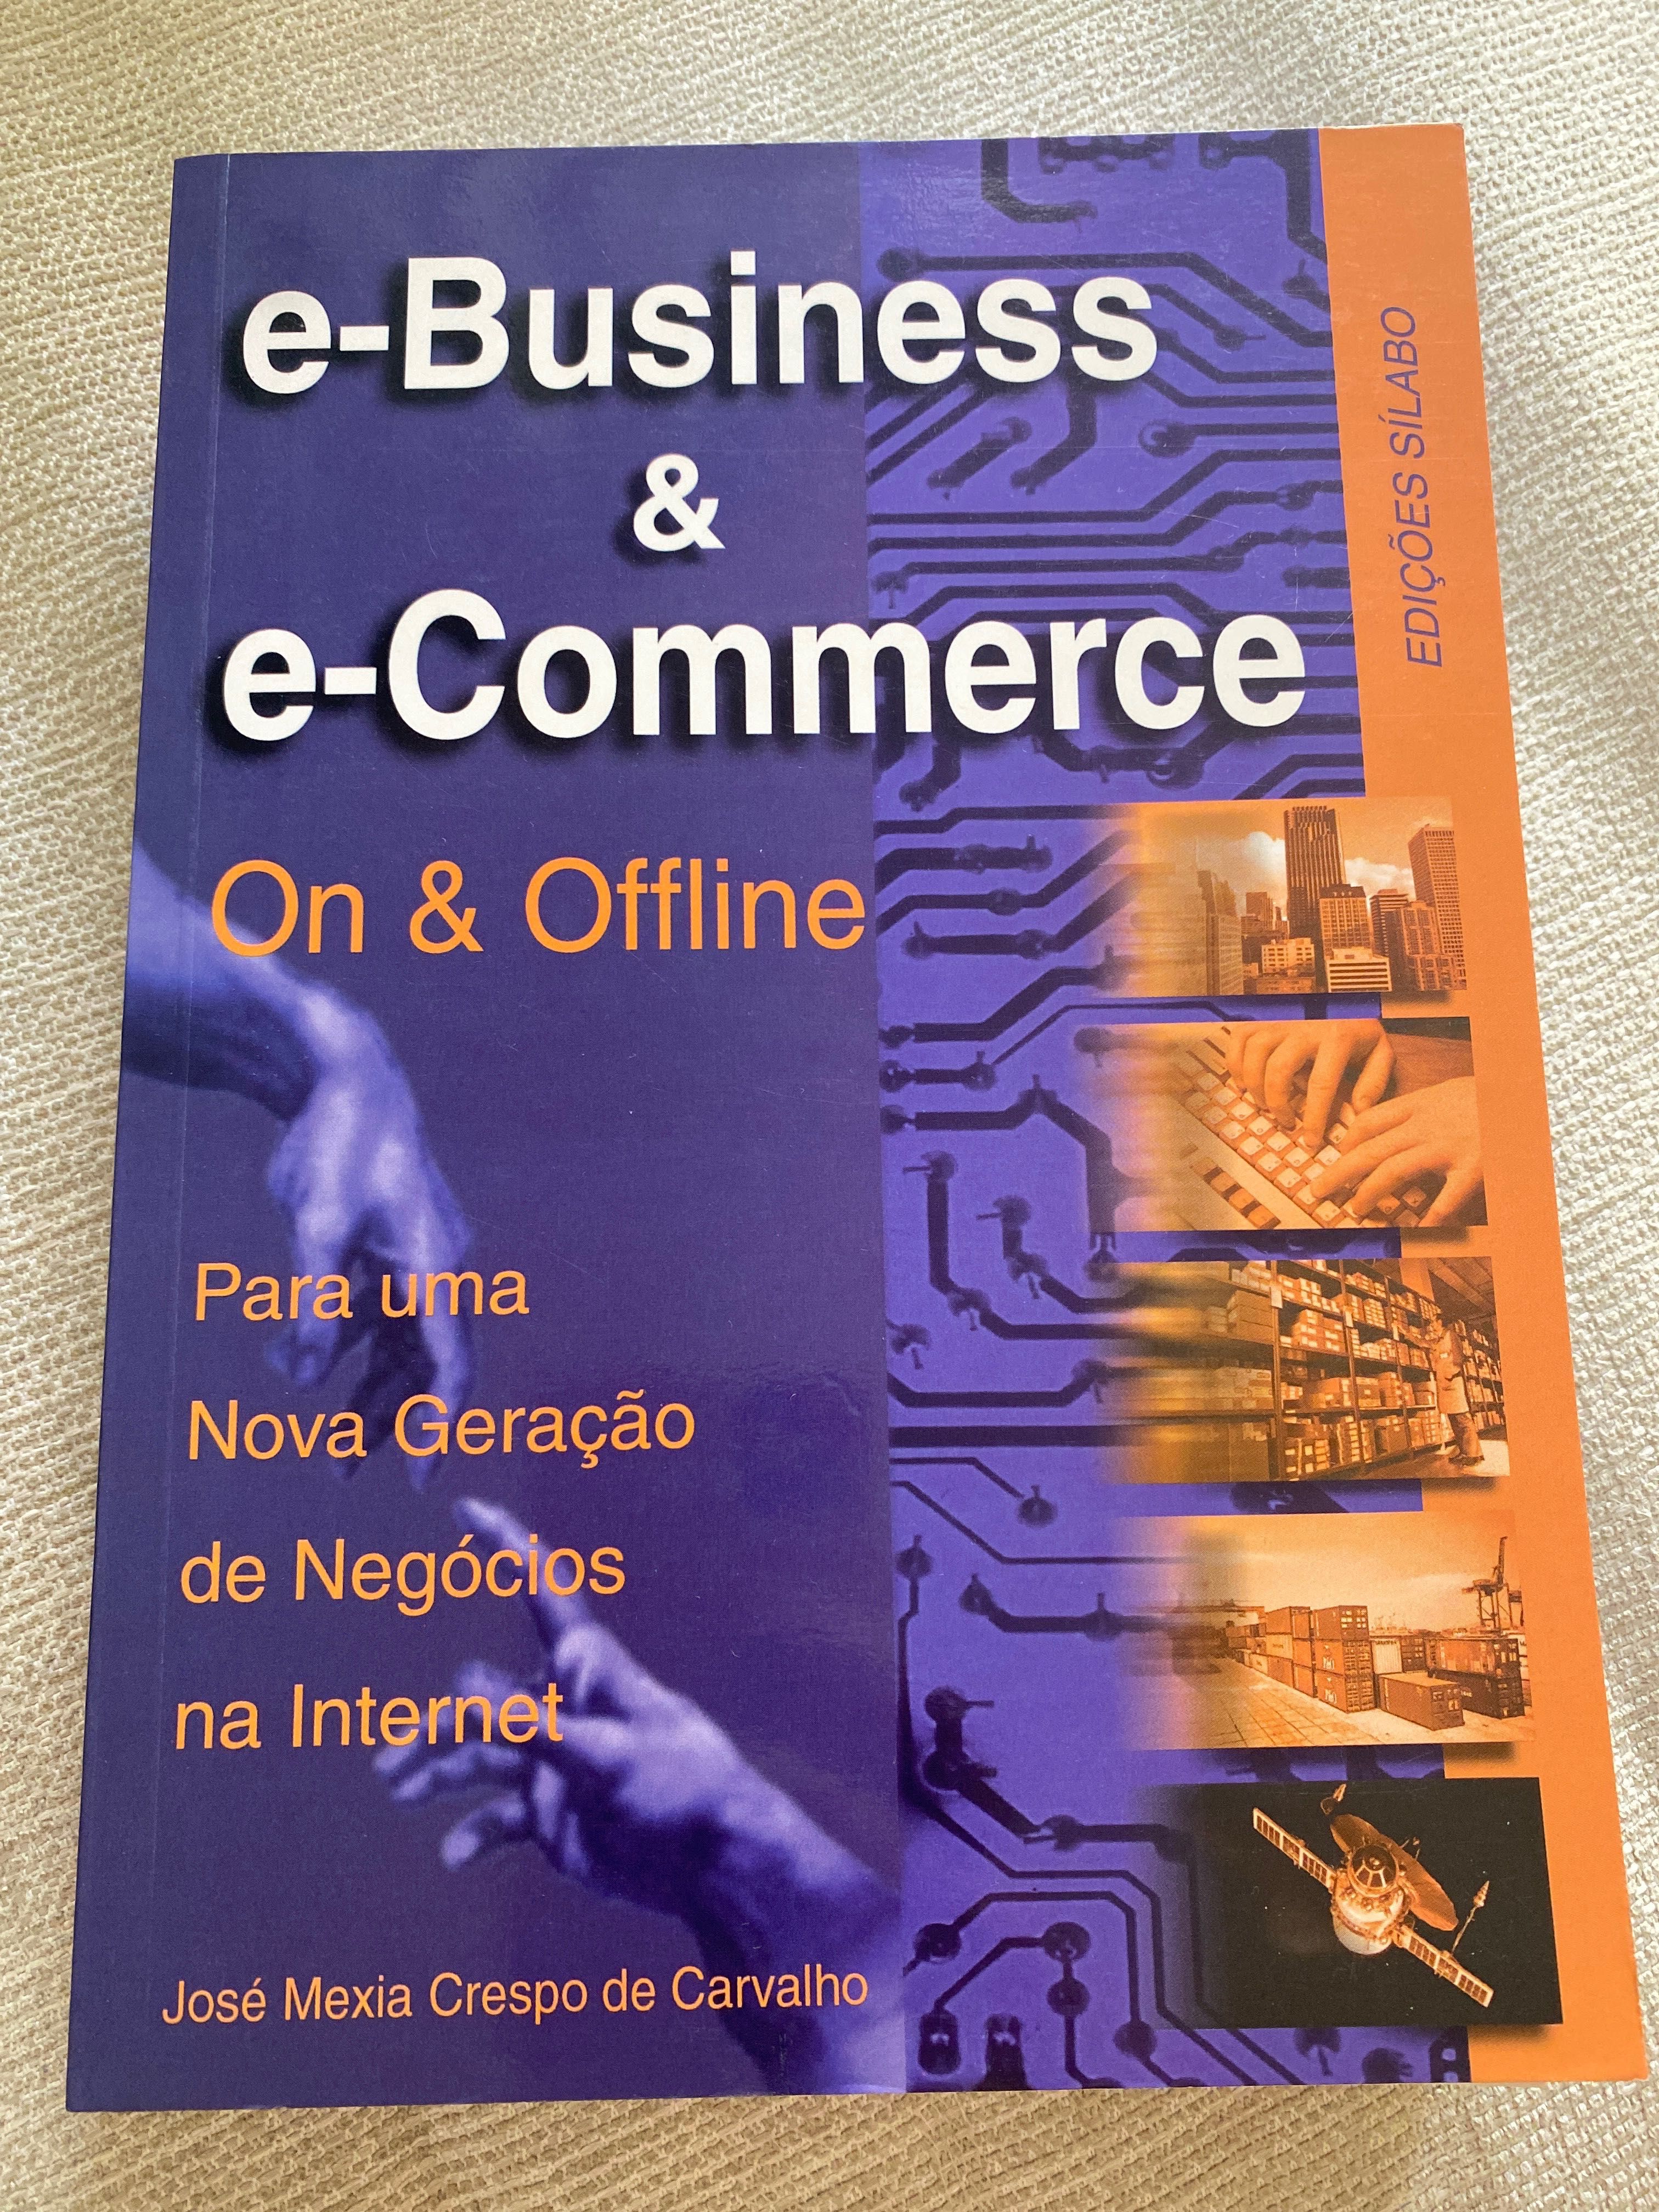 Livro “e-Business & e-Commerce” on & Offline